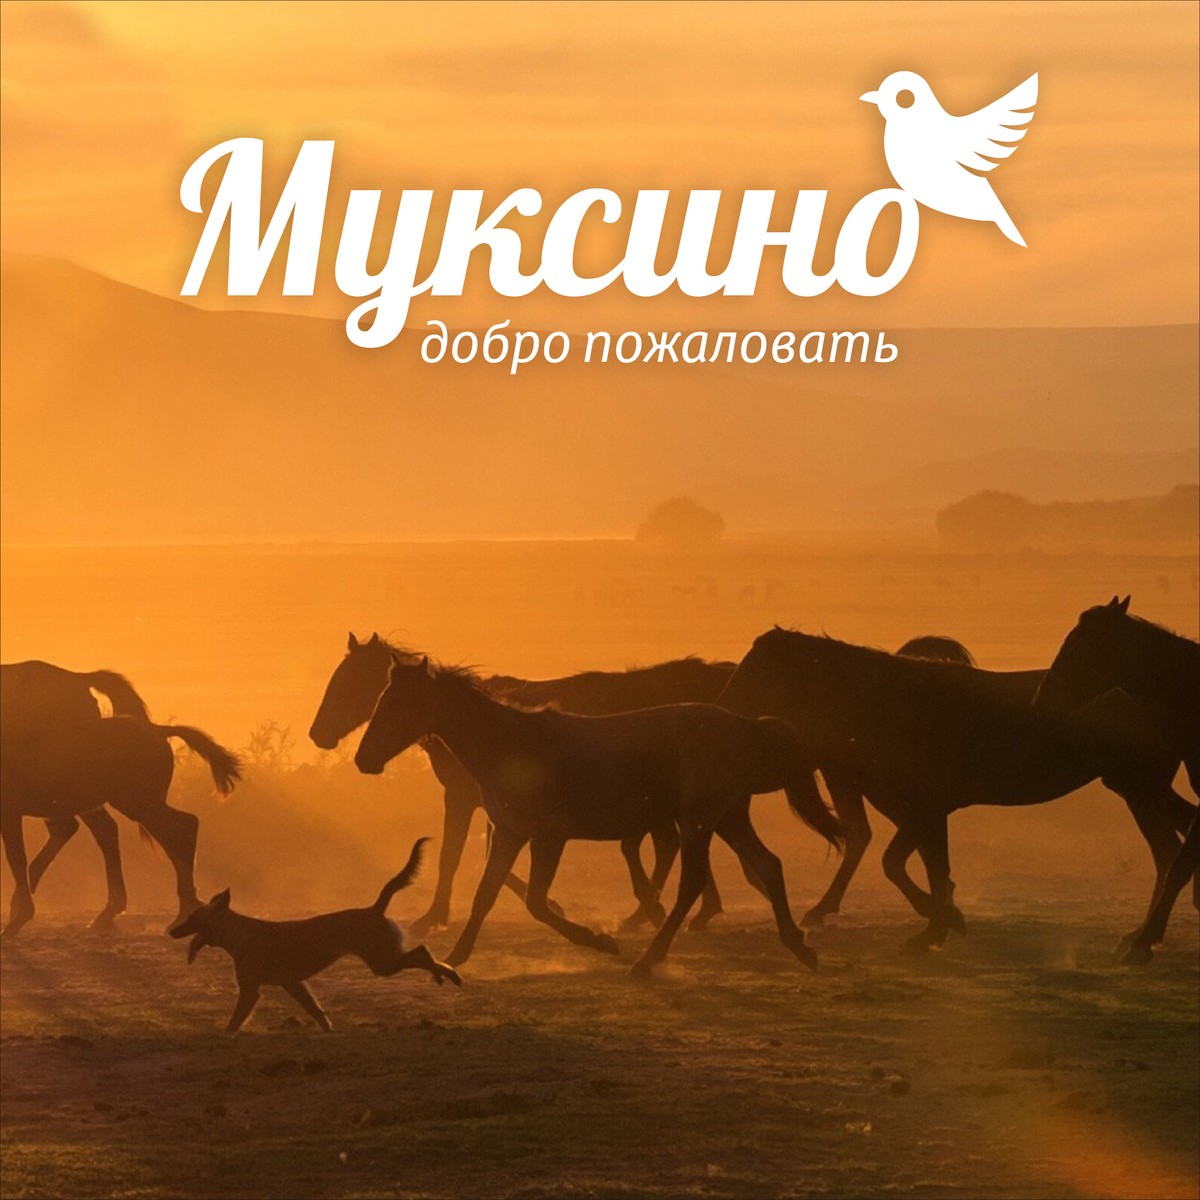 Разработка логотипа для татарской деревни Муксино